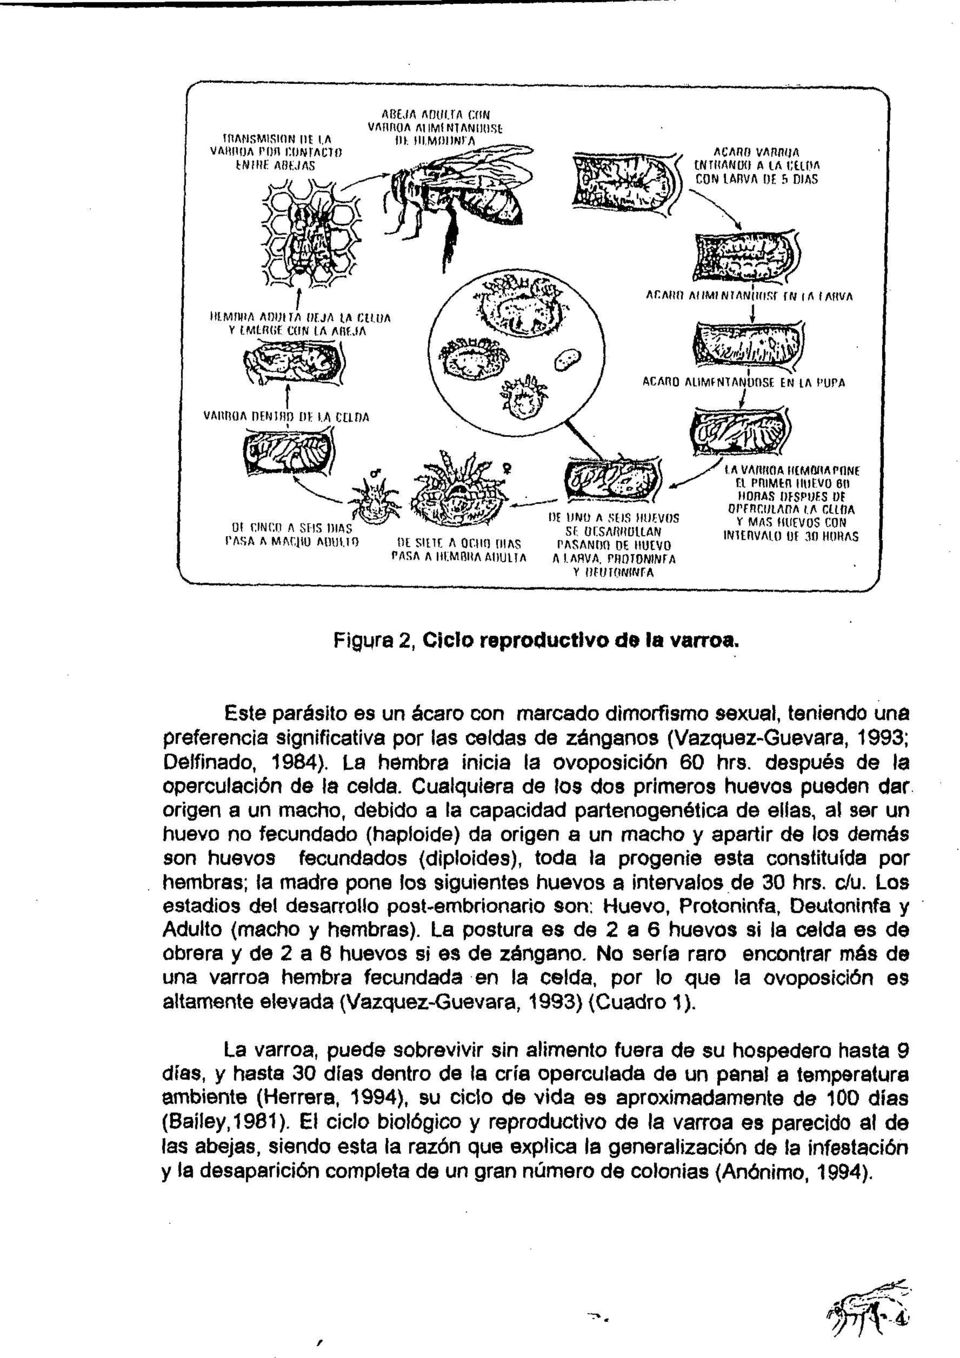 Este parásito es un ácaro con marcado dimorfismo sexual, teniendo una preferencia significativa por las celdas de zánganos (Vazquez-Guevara, 1993; Oelfinado, 1984).